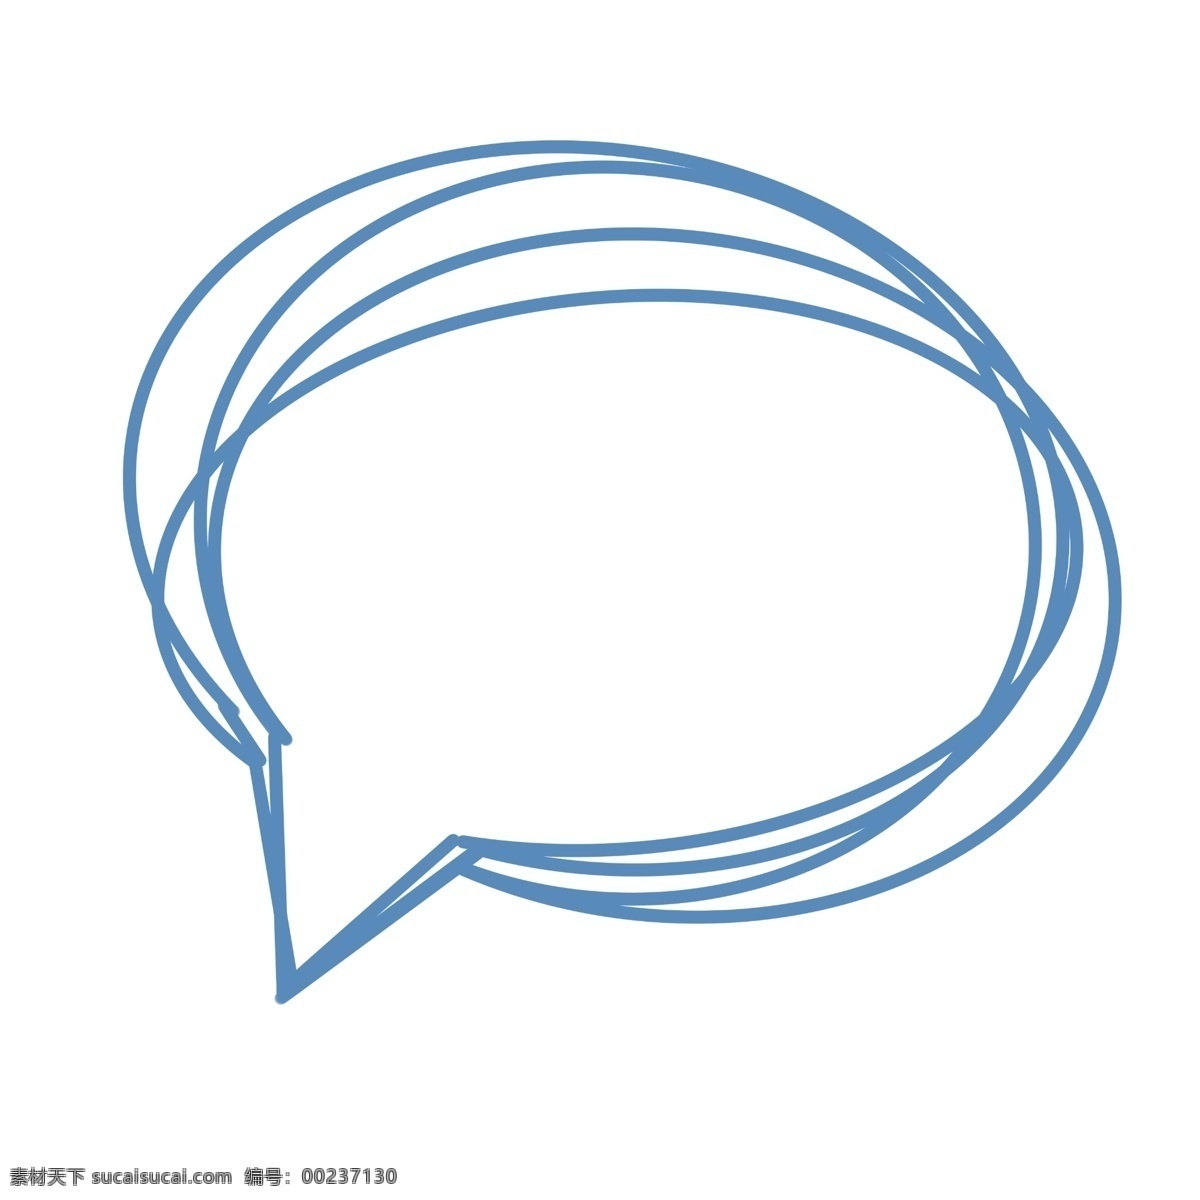 简单 对话框 手绘 线条 可爱 对话款 蓝色 简约 框 卡通 圆形 线条对话框 卡通手绘